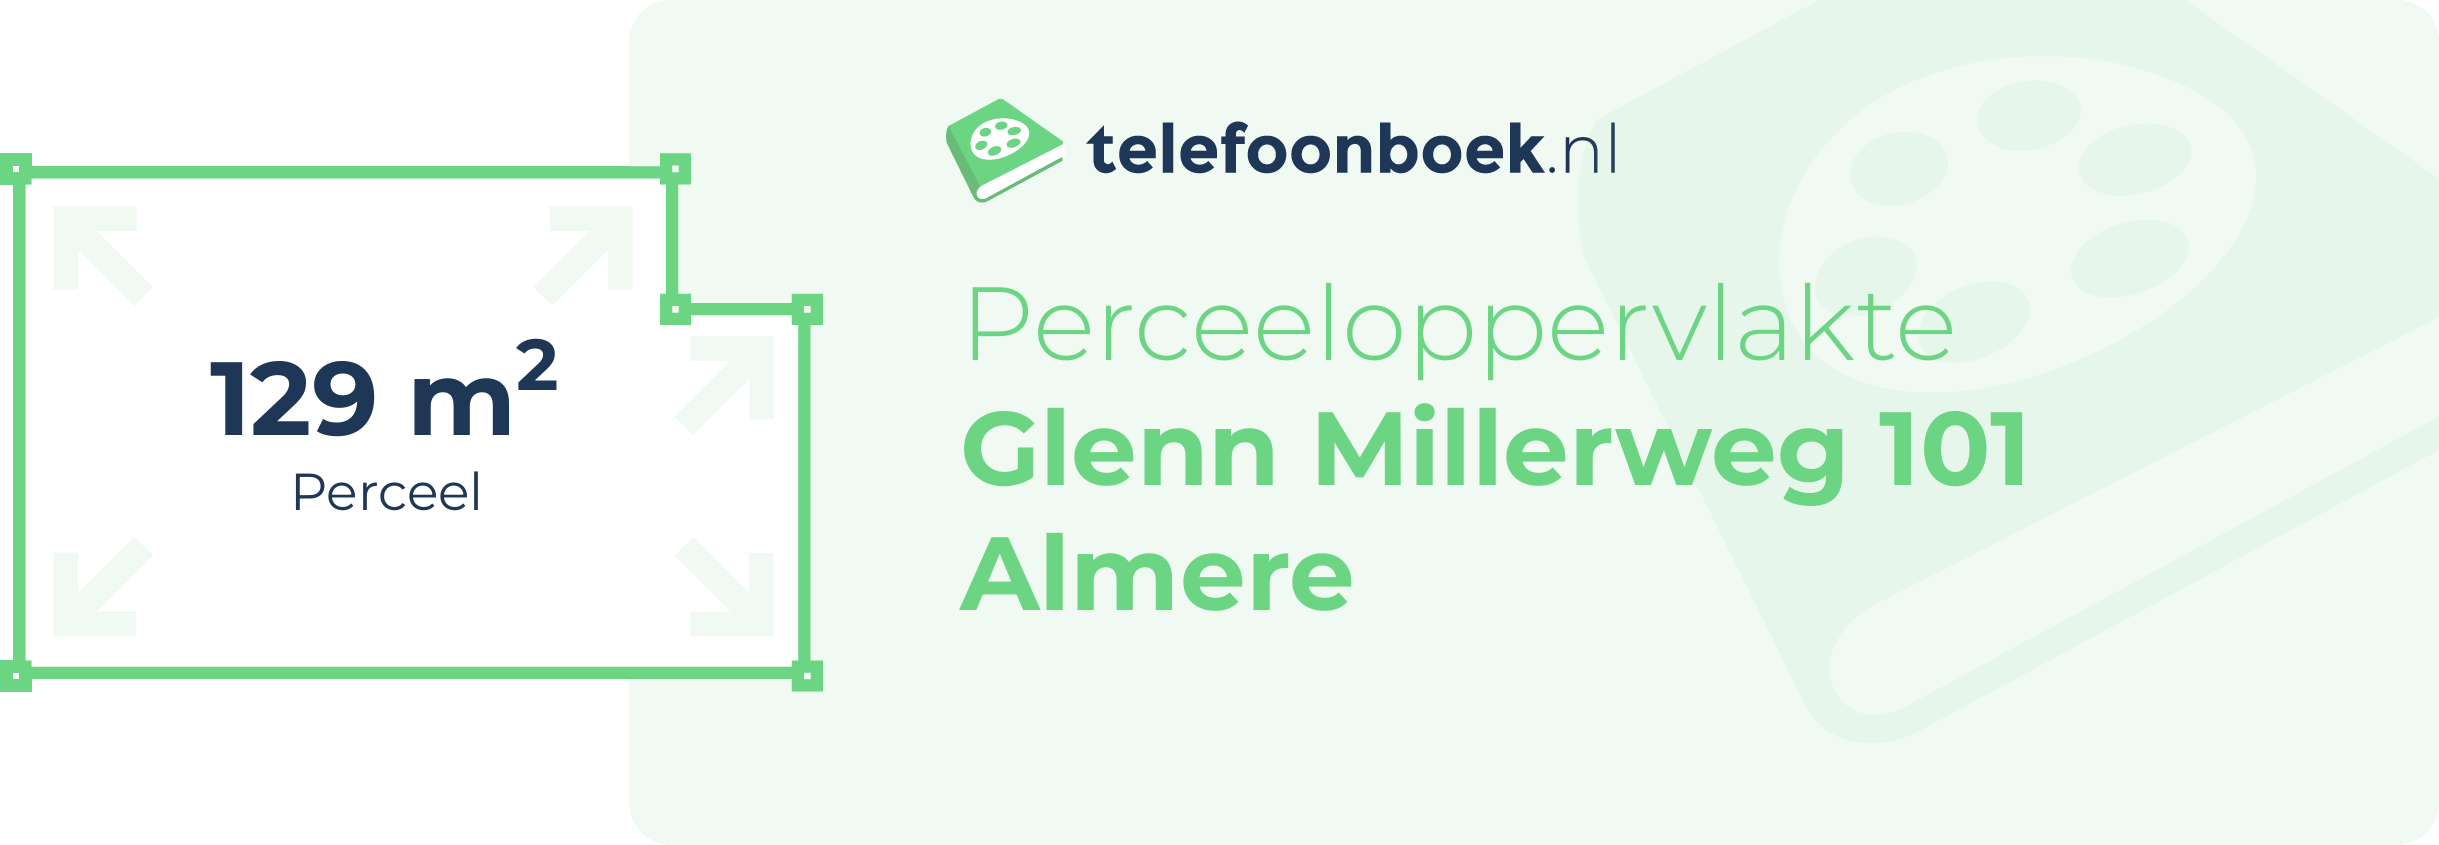 Perceeloppervlakte Glenn Millerweg 101 Almere